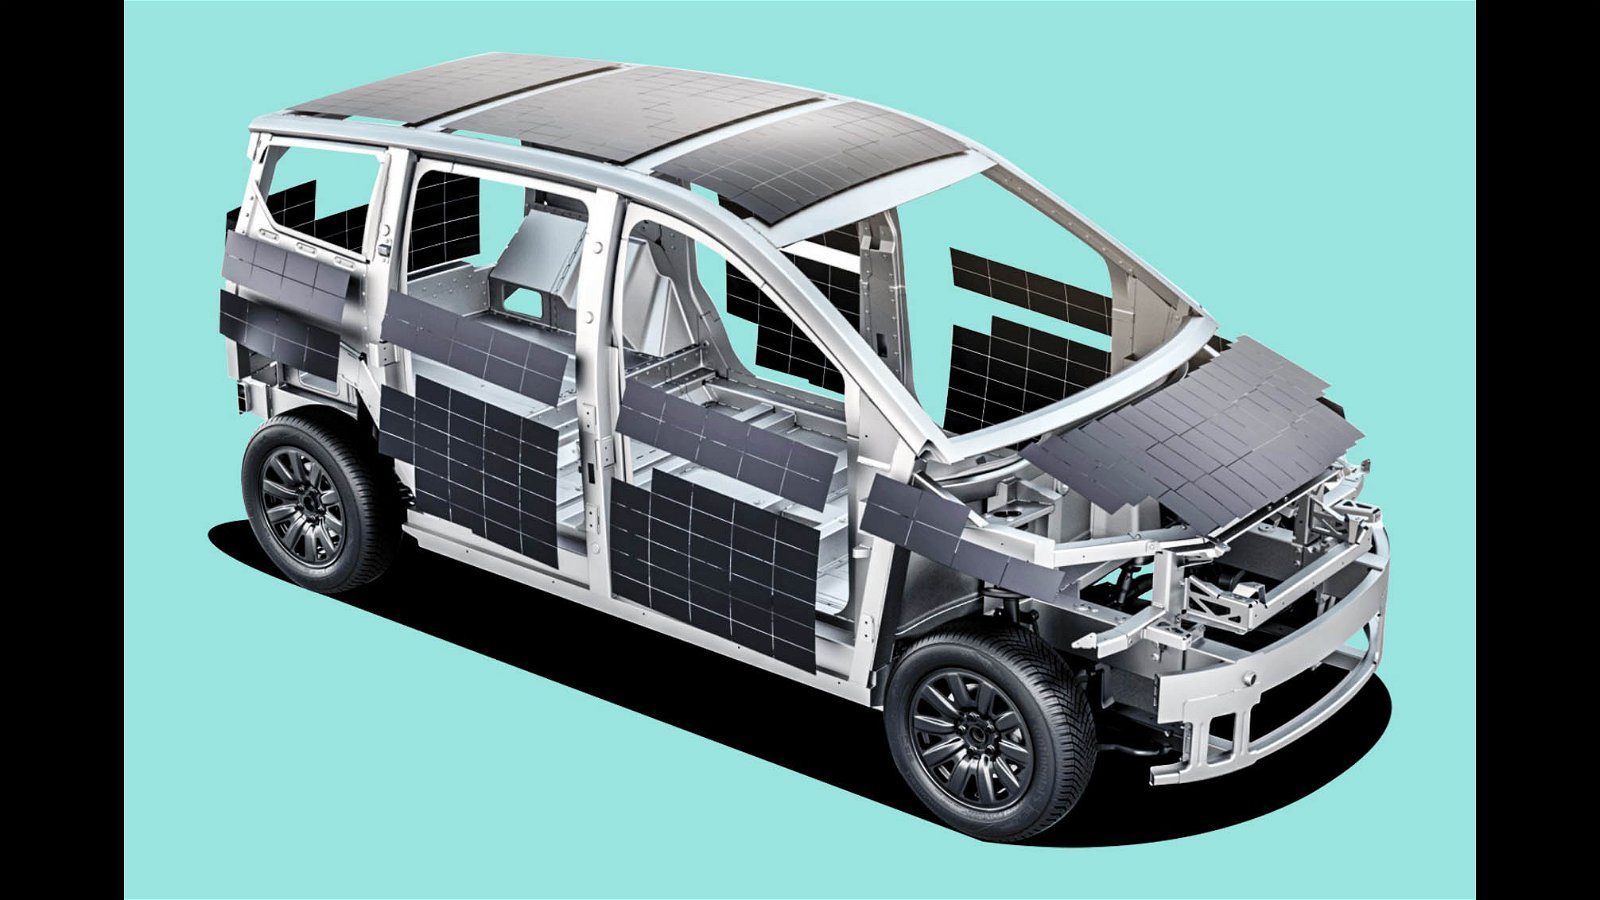 La voiture solaire est une utopie : Sono Motors et Lightyear le